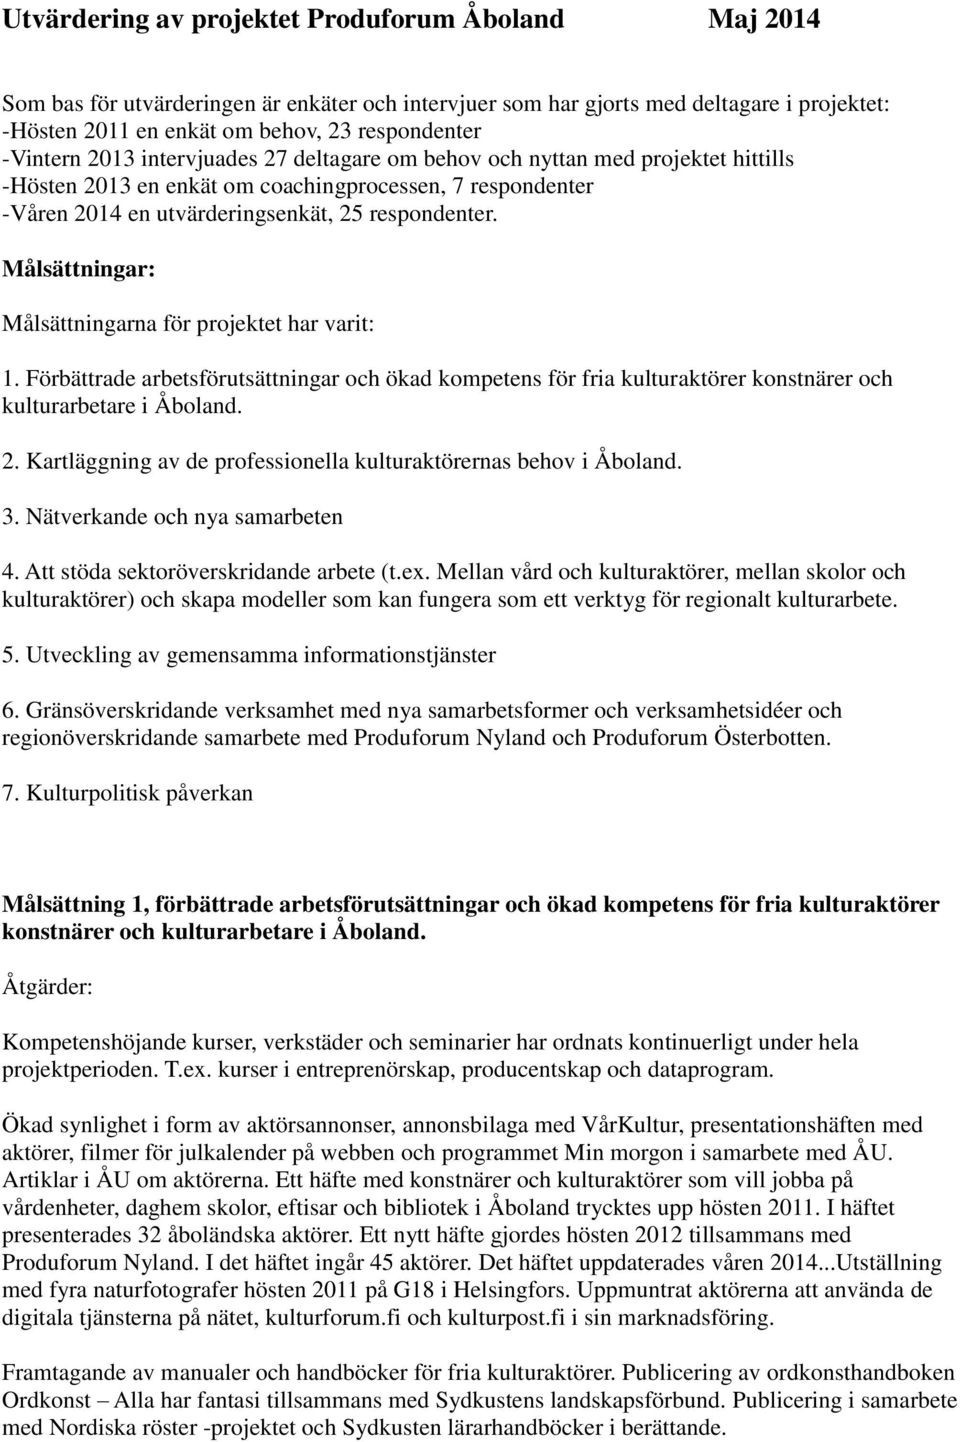 Målsättningar: Målsättningarna för projektet har varit: 1. Förbättrade arbetsförutsättningar och ökad kompetens för fria kulturaktörer konstnärer och kulturarbetare i Åboland. 2.